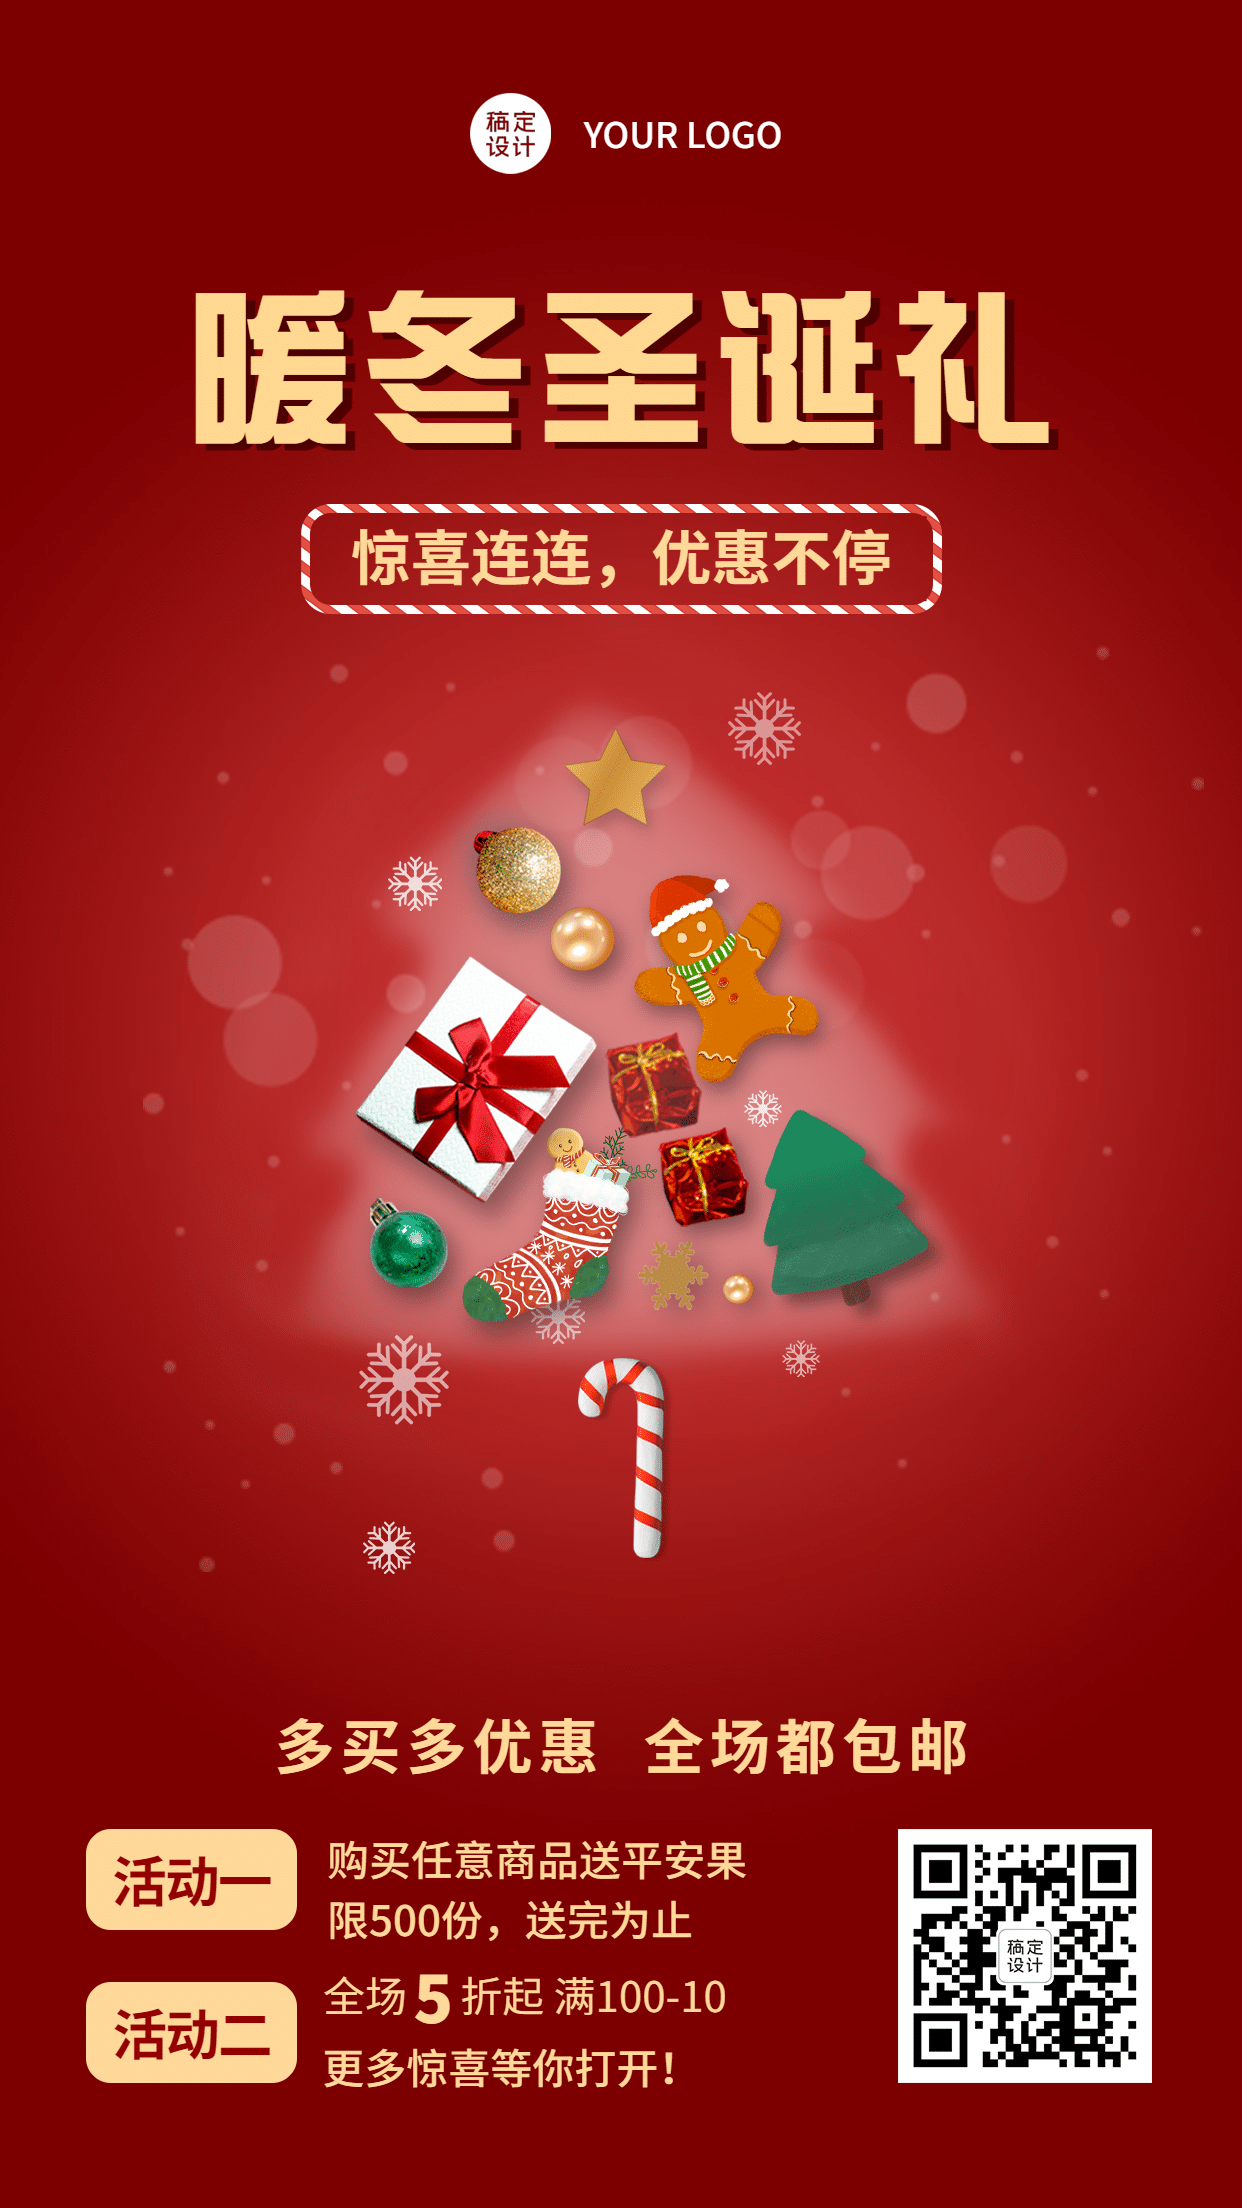 圣诞节微商品牌营销活动手机海报预览效果